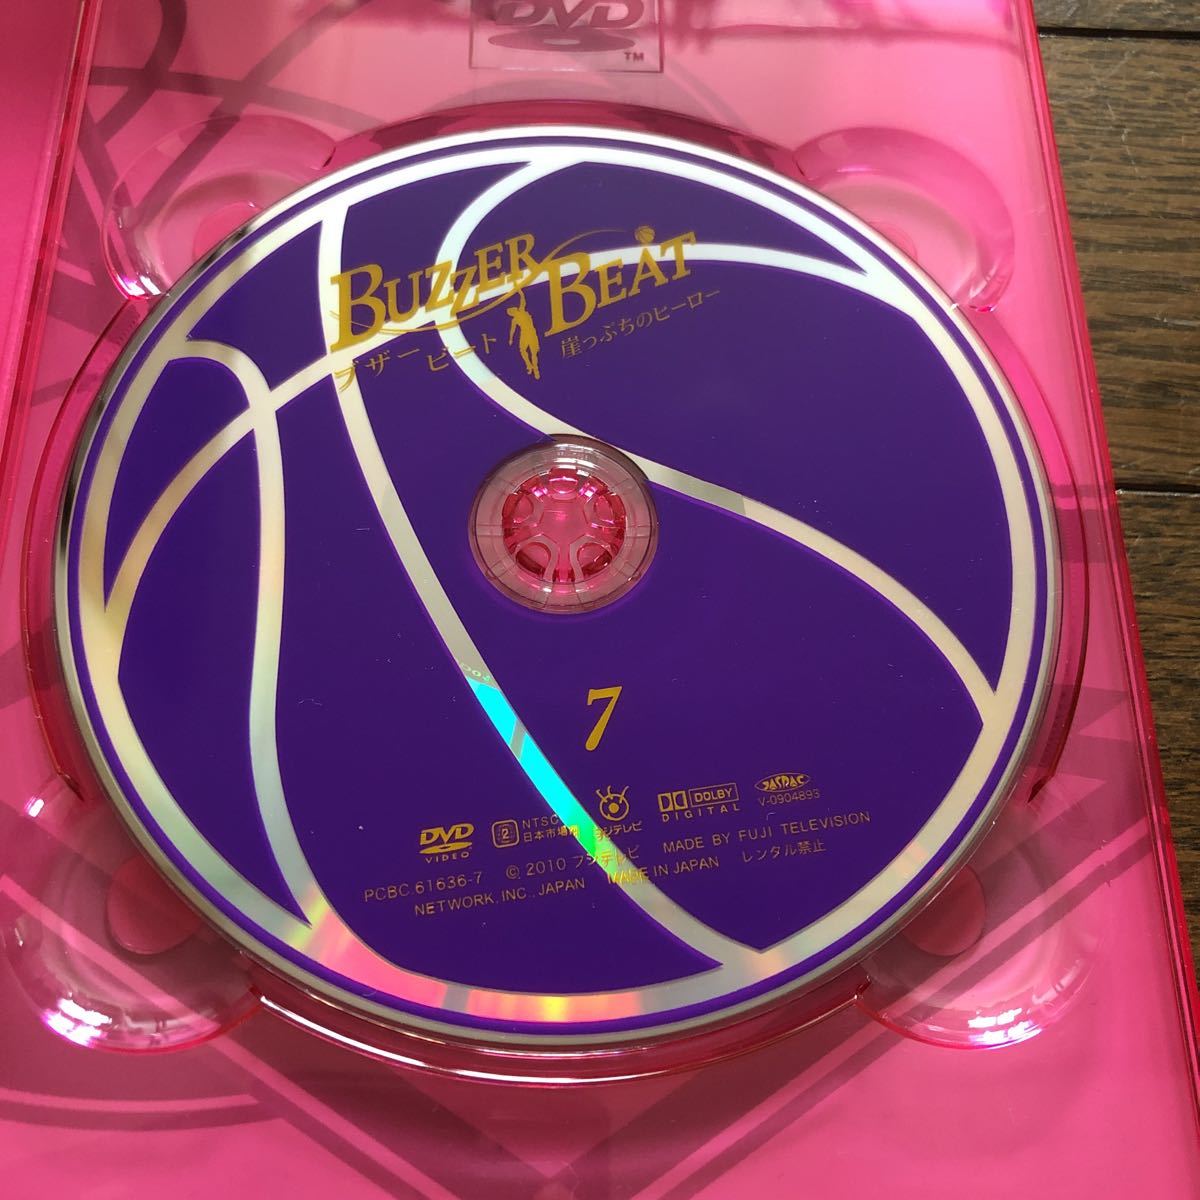 ブザー・ビート 崖っぷちのヒーロー BUZZER BEAT DVD-BOX 山下智久 北川景子 DVD プロバスケットチーム ブックレット  特典ディスク有